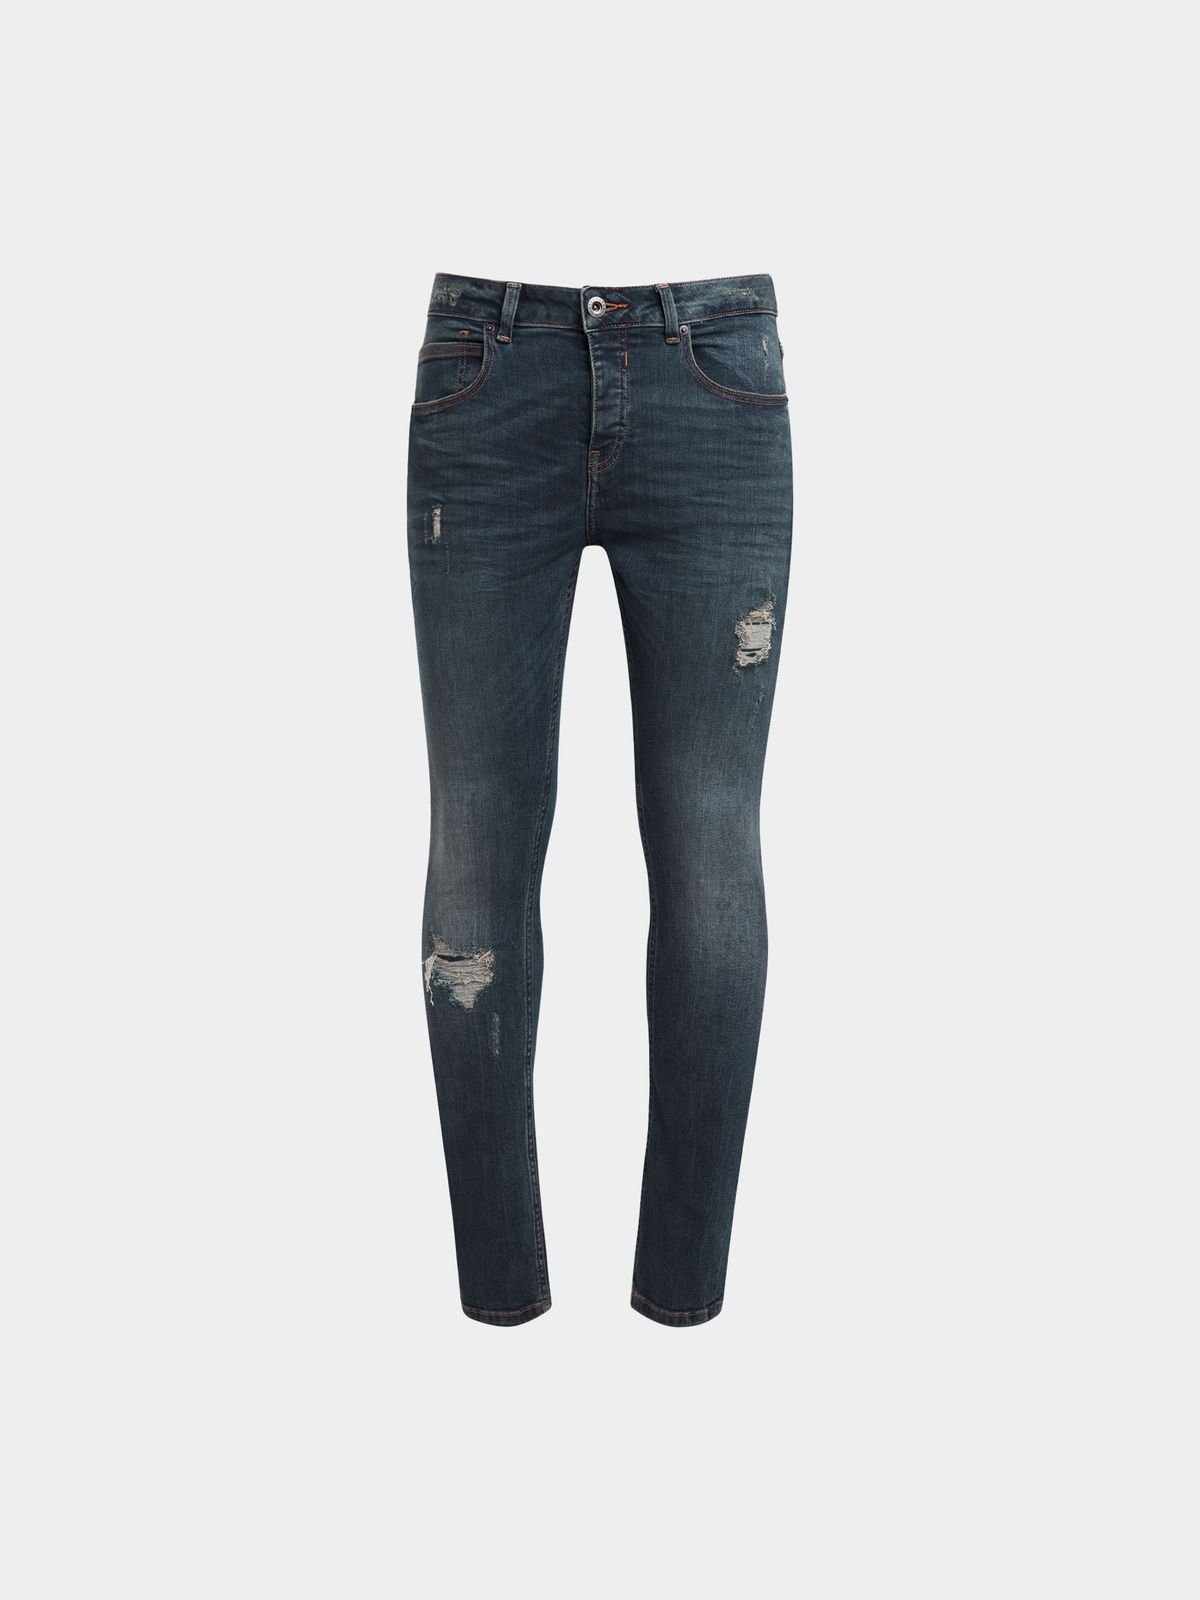 Redbat Men's Medium Blue Super Skinny Jeans - Bash.com